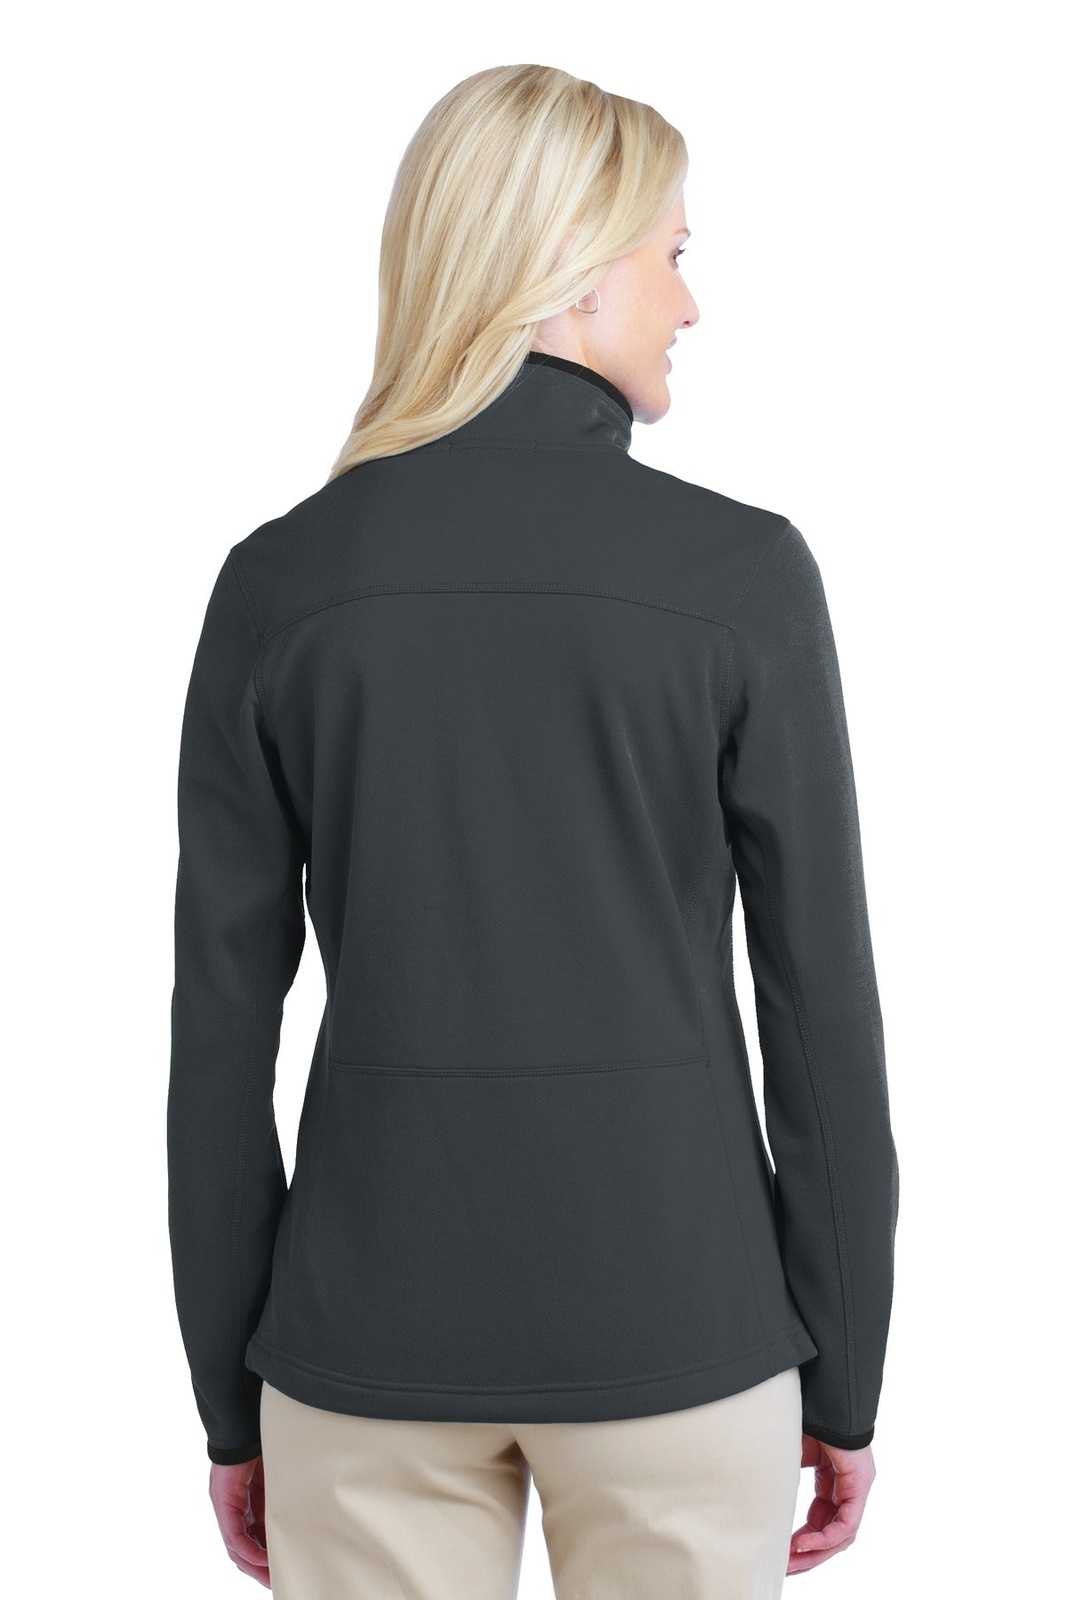 Port Authority L222 Ladies Pique Fleece Jacket - Graphite - HIT a Double - 1